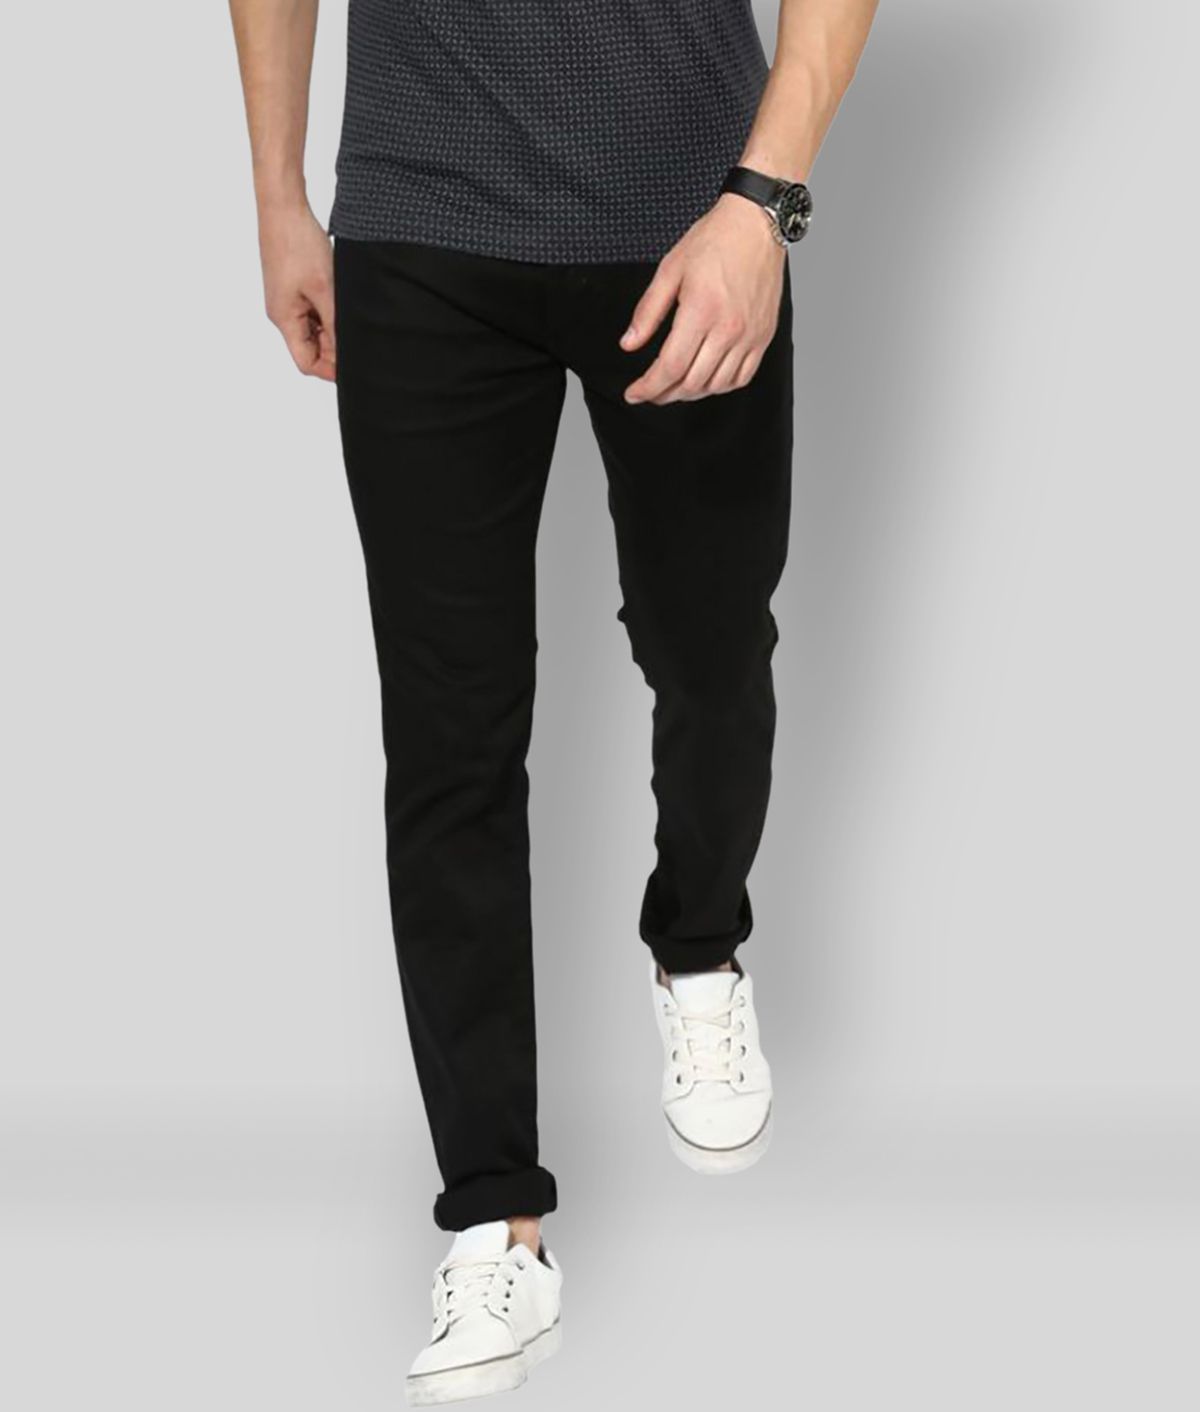     			Lawson - Black 100% Cotton Slim Fit Men's Jeans ( Pack of 1 )